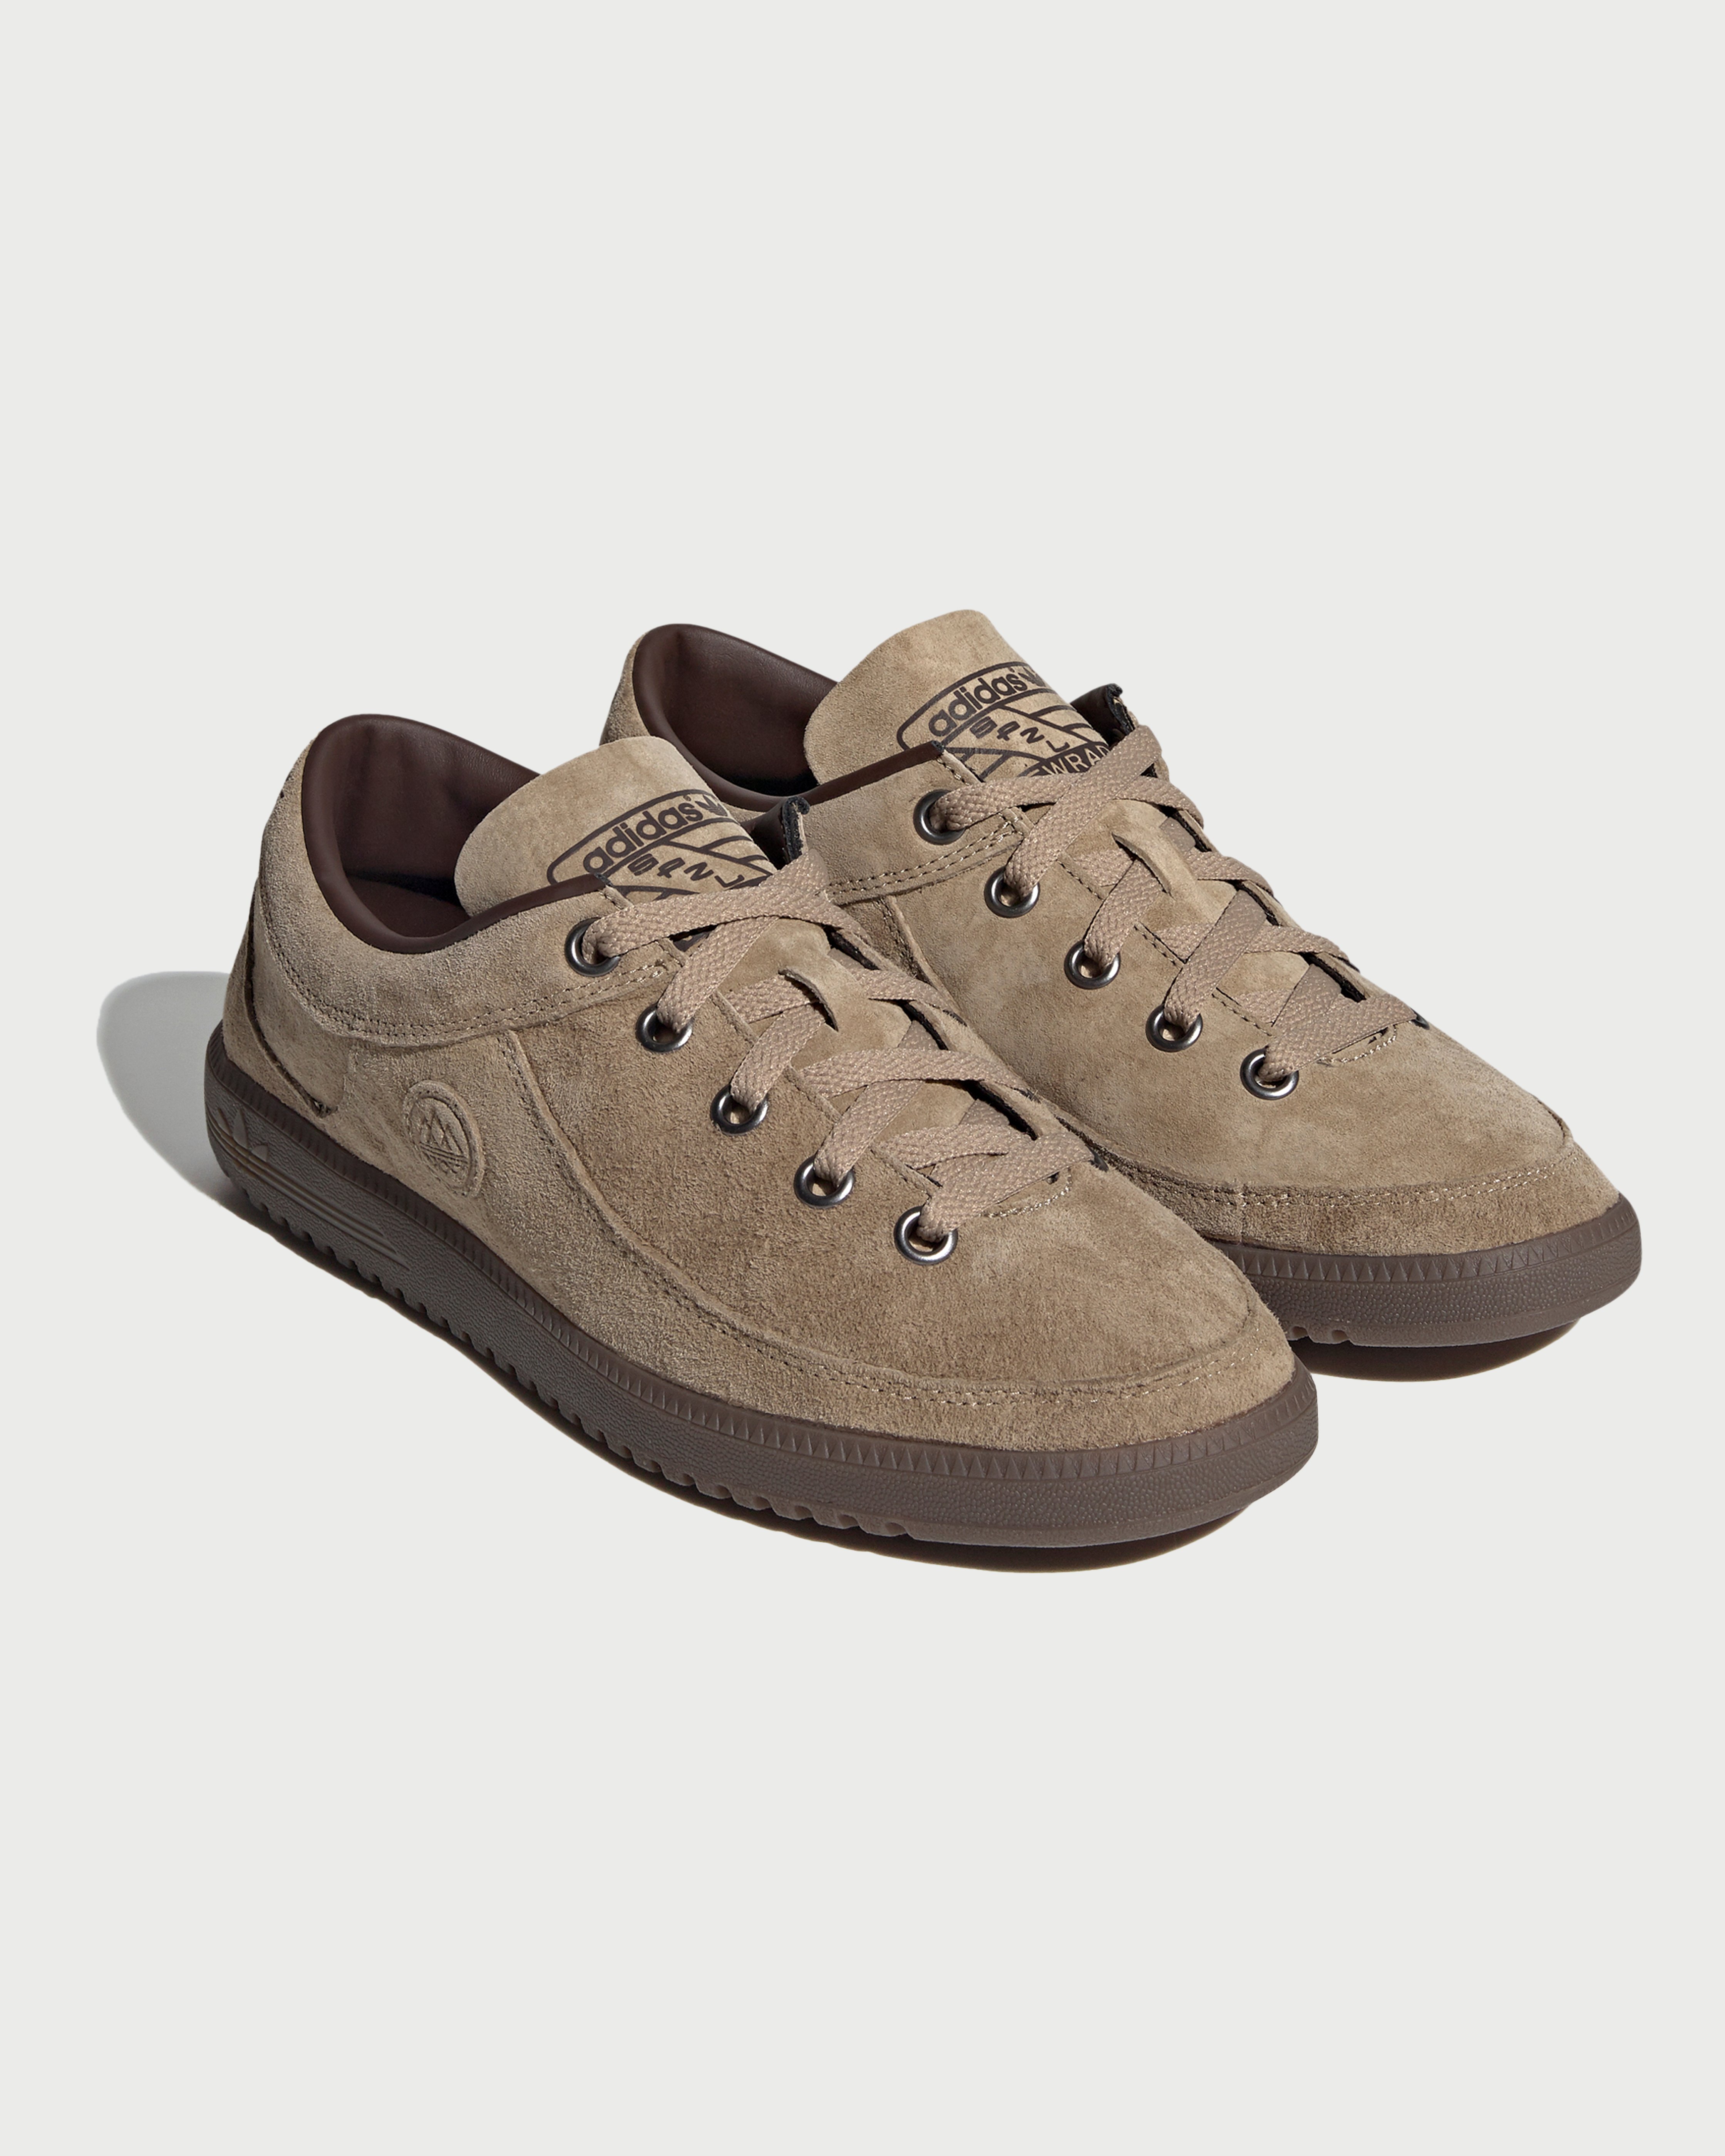 Adidas - Newrad Spezial Brown - Footwear - Brown - Image 2